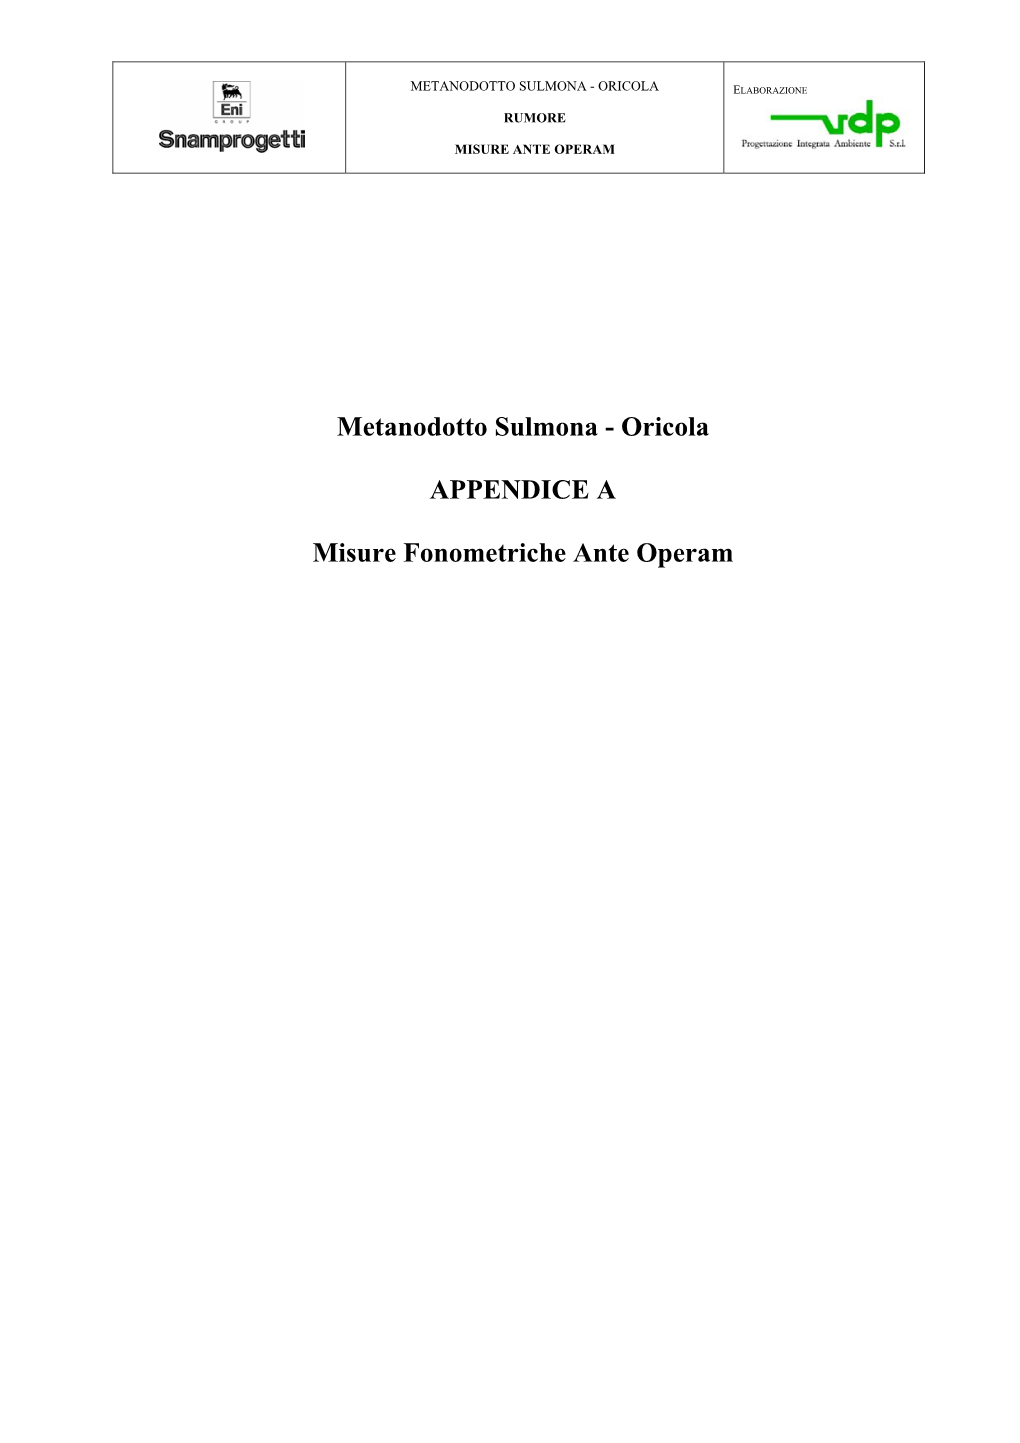 Metanodotto Sulmona - Oricola Elaborazione